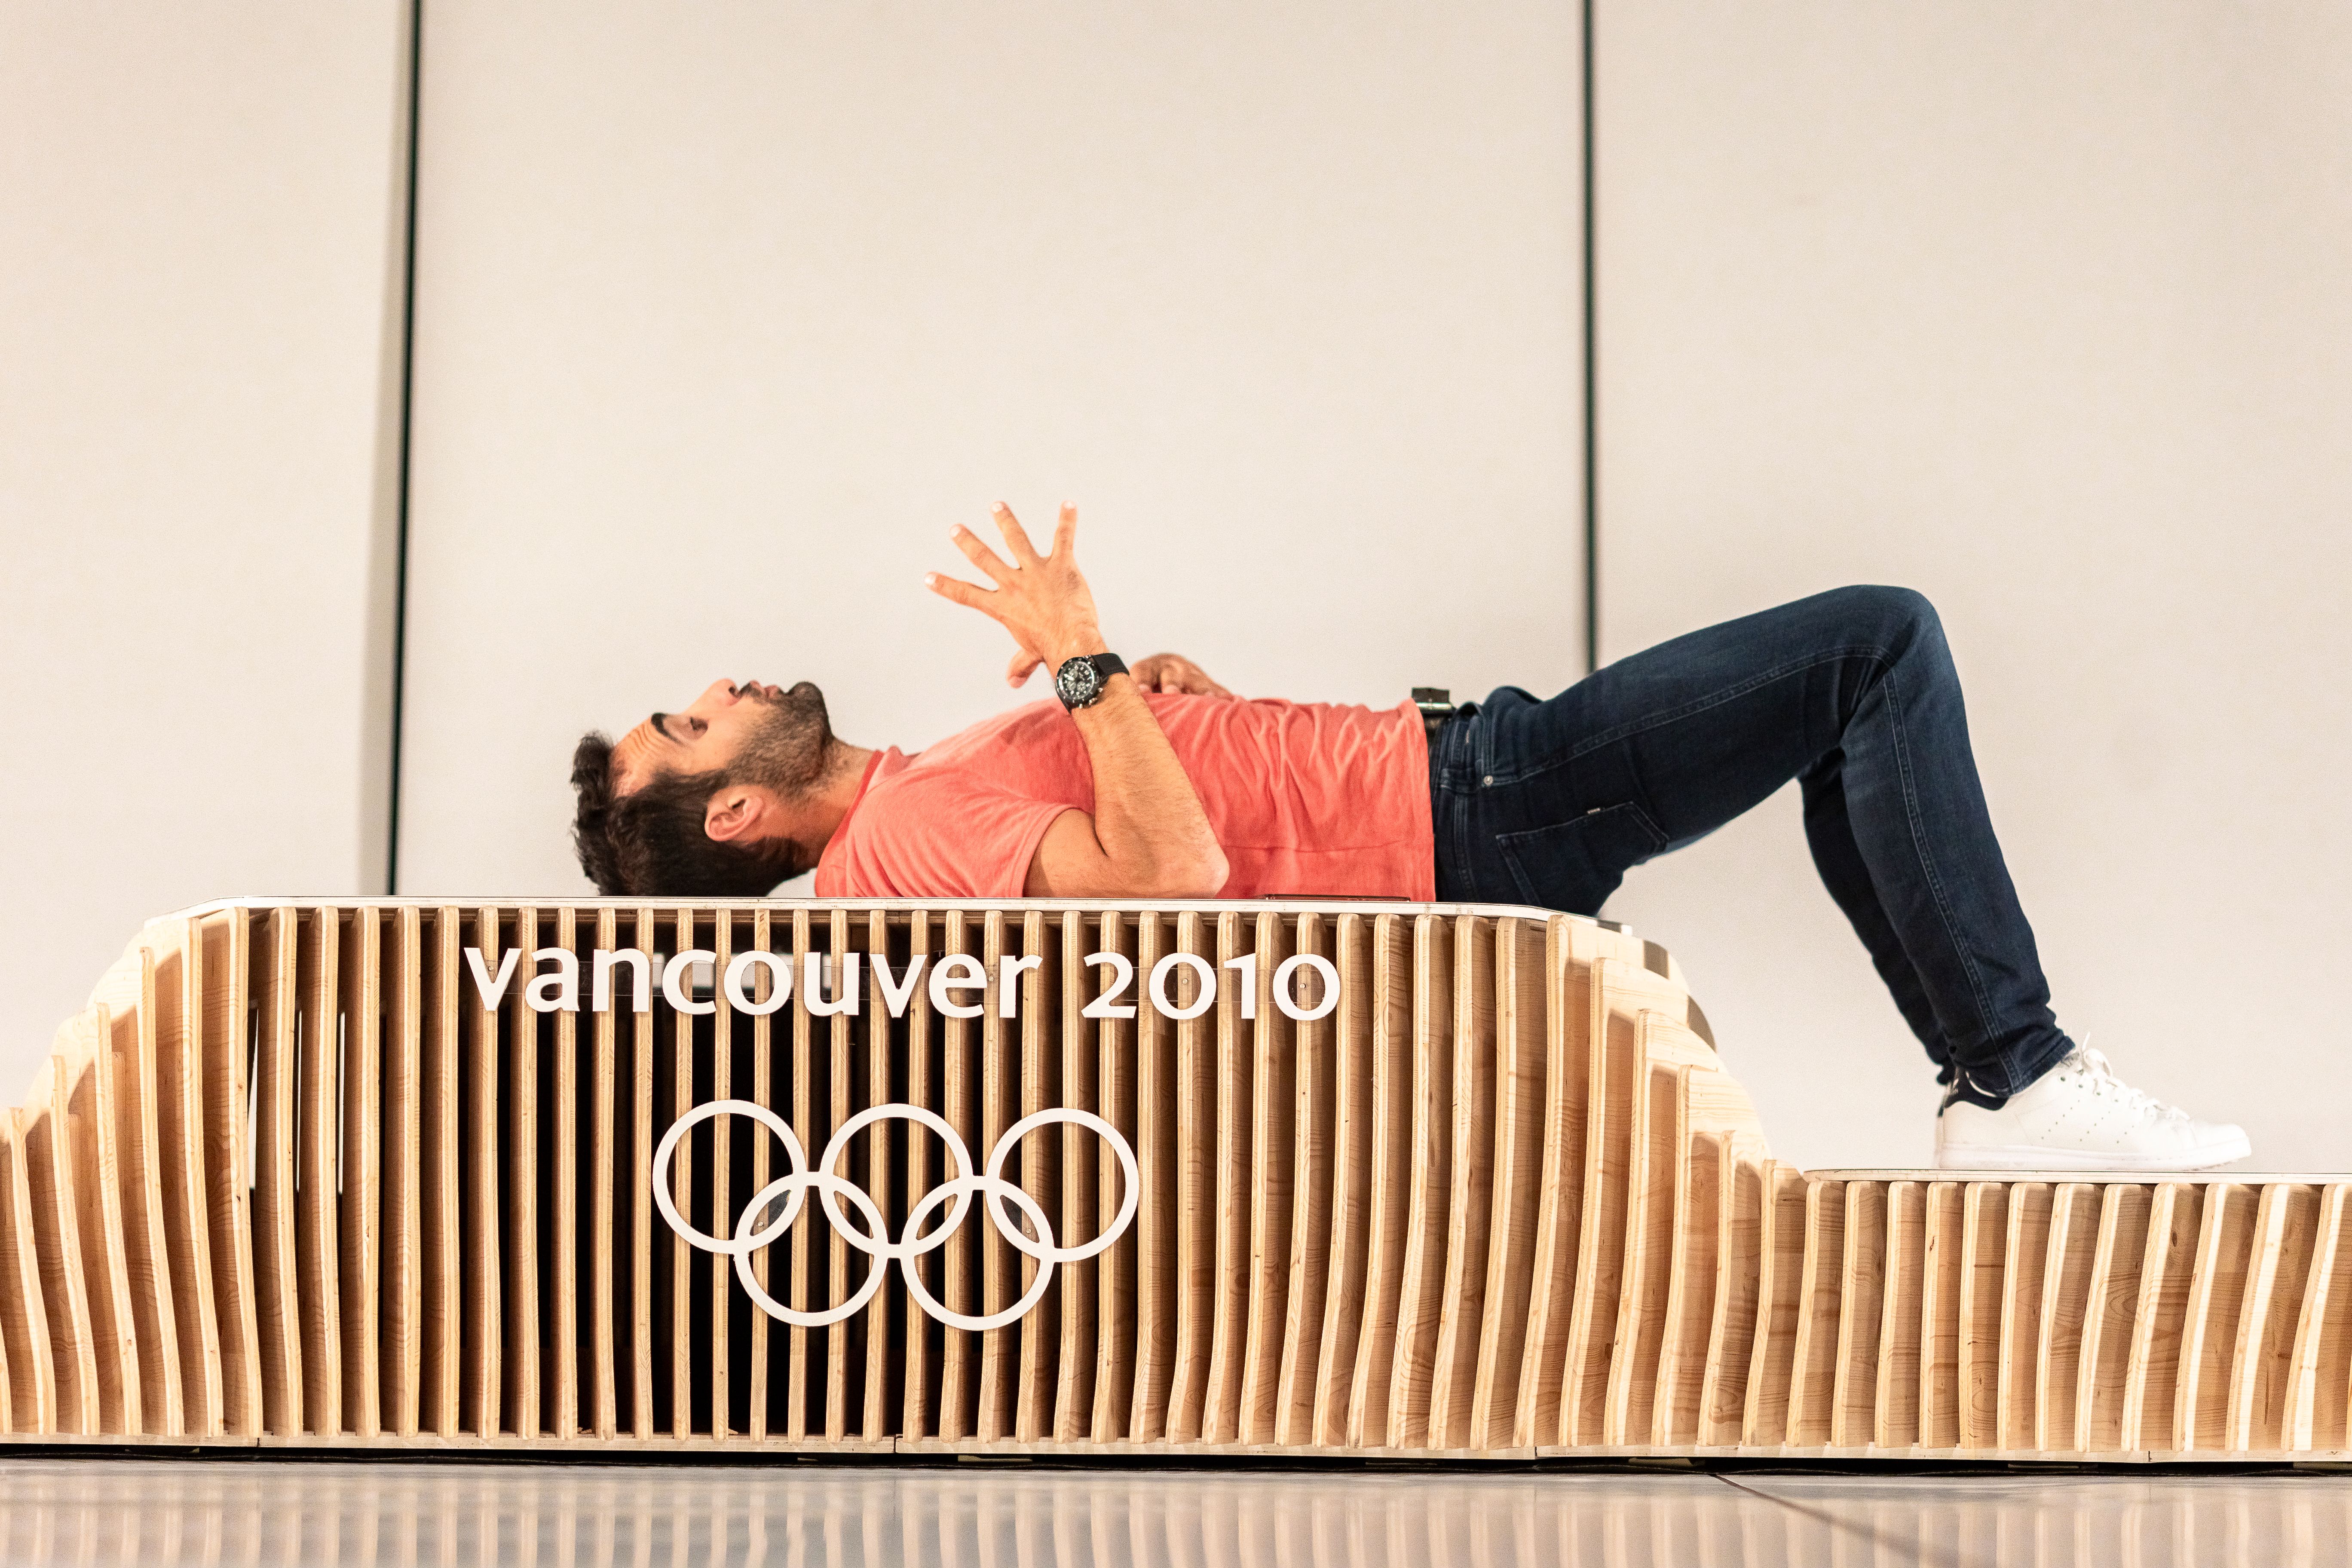 Martin Fourcade allongé sur un podium des Jeux Olympiques de Vancouver en 2020